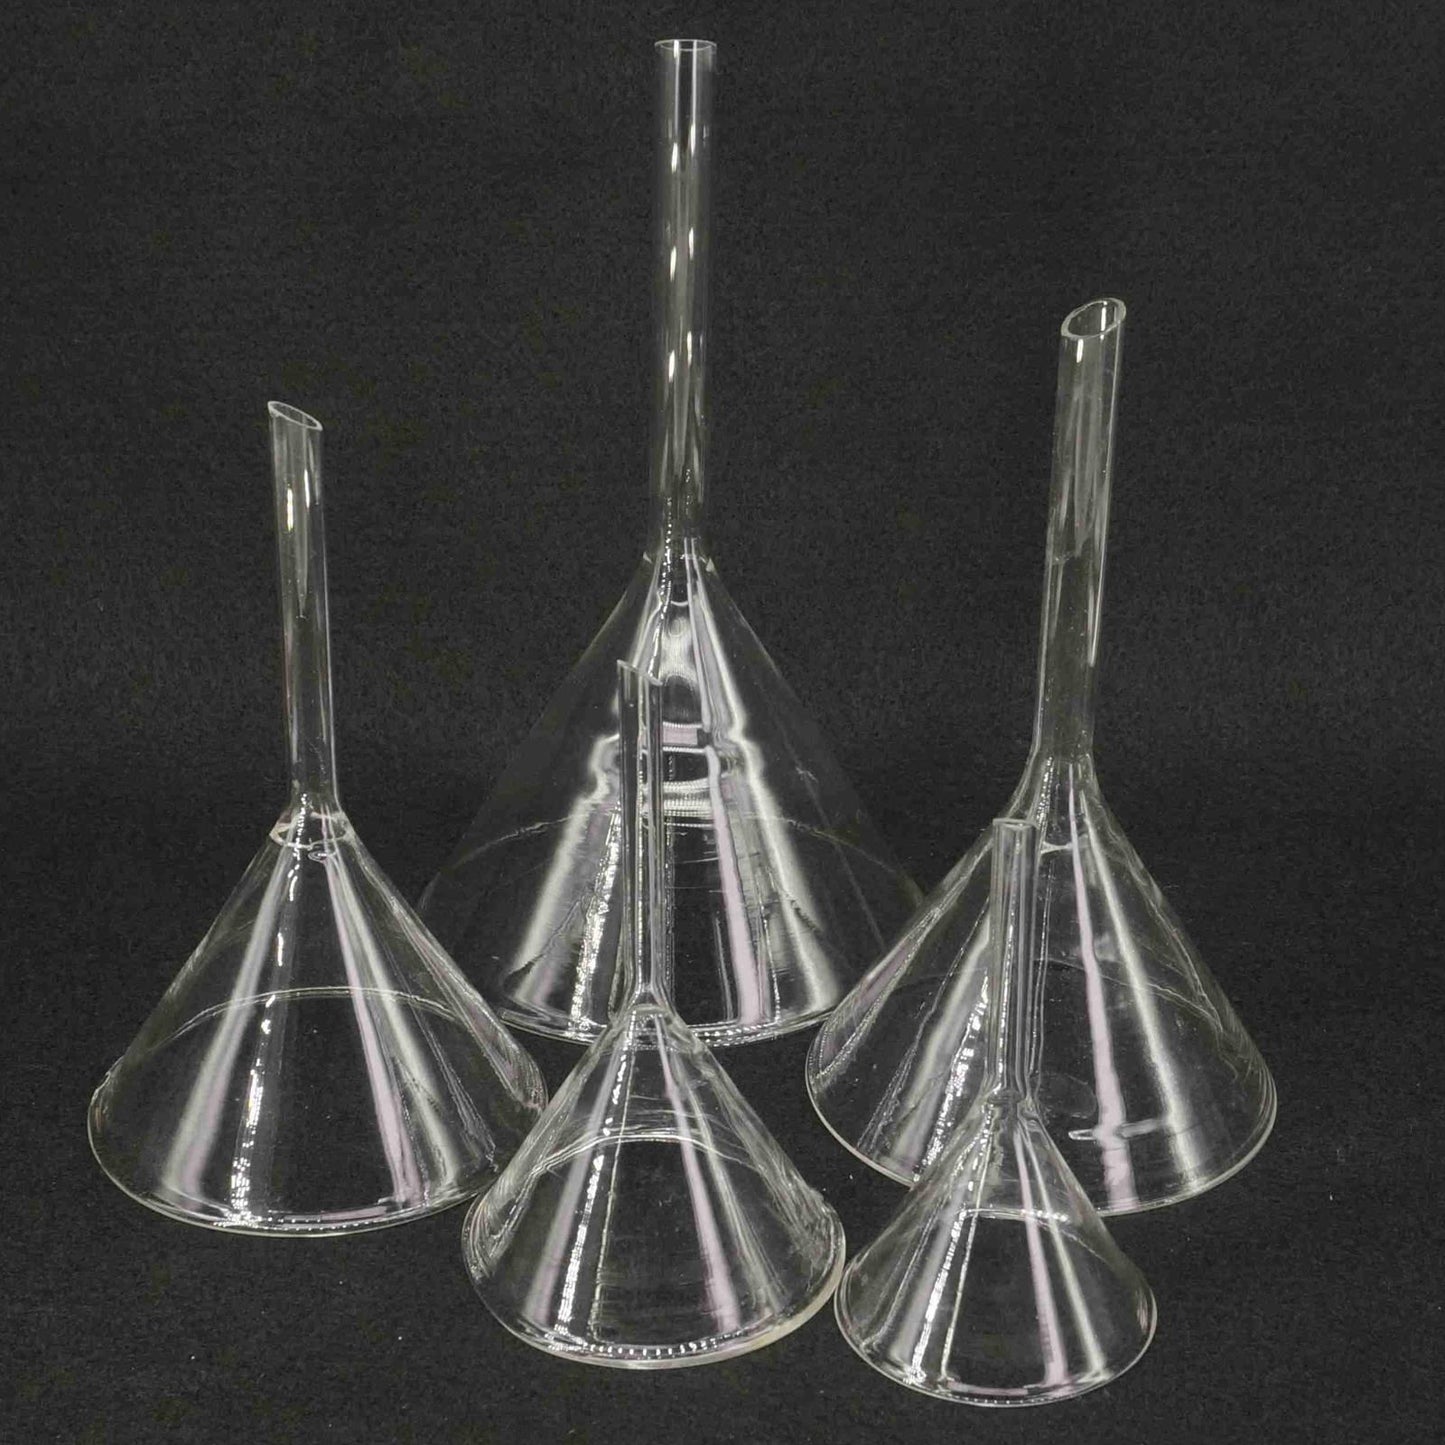 40mm-50mm-60mm-75mm-80mm-90mm-100mm-120mm-lab7th-Miniature-Lab-Glass-Funnel-Borosilicate-Glassware-Triangle-Funnel